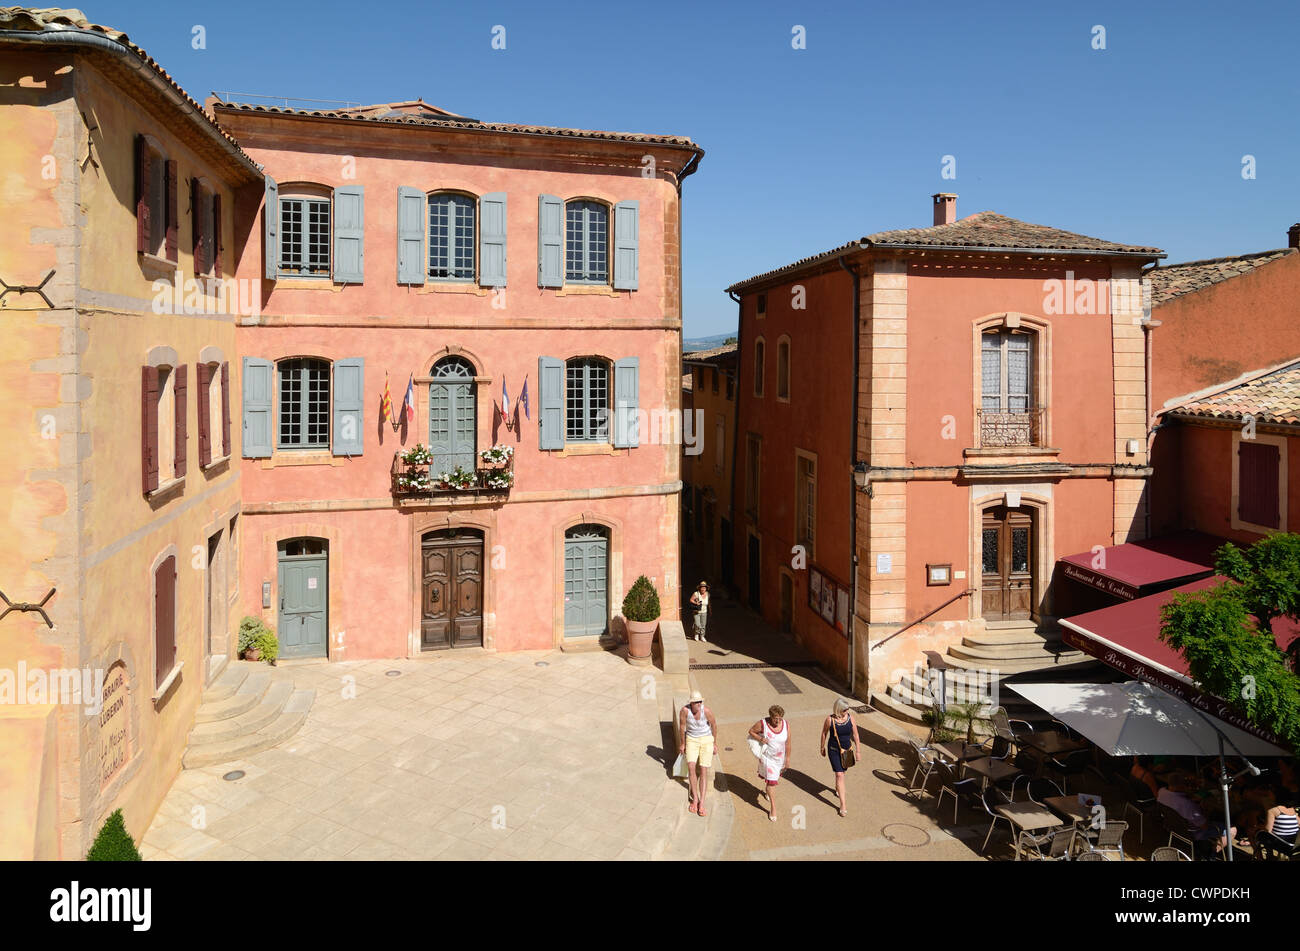 Les touristes se promène sur la place du village principal avec les bâtiments de couleur Ocher et l'Hôtel de ville ou Mairie Roussillon Luberon Provence France Banque D'Images